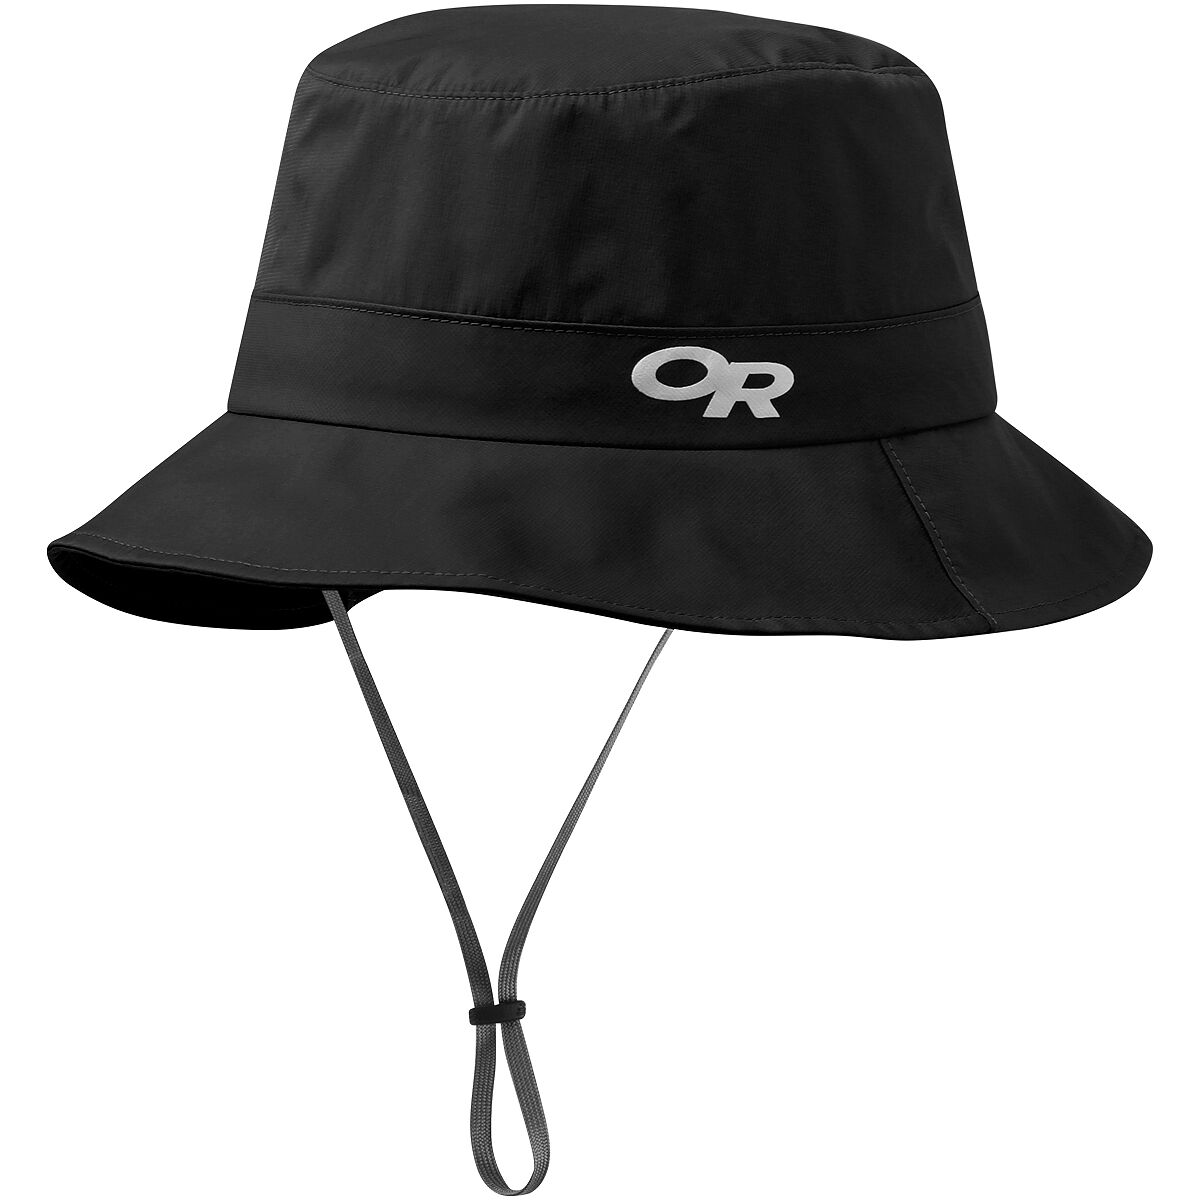 Outdoor Research Intersteller Rain Bucket Hat